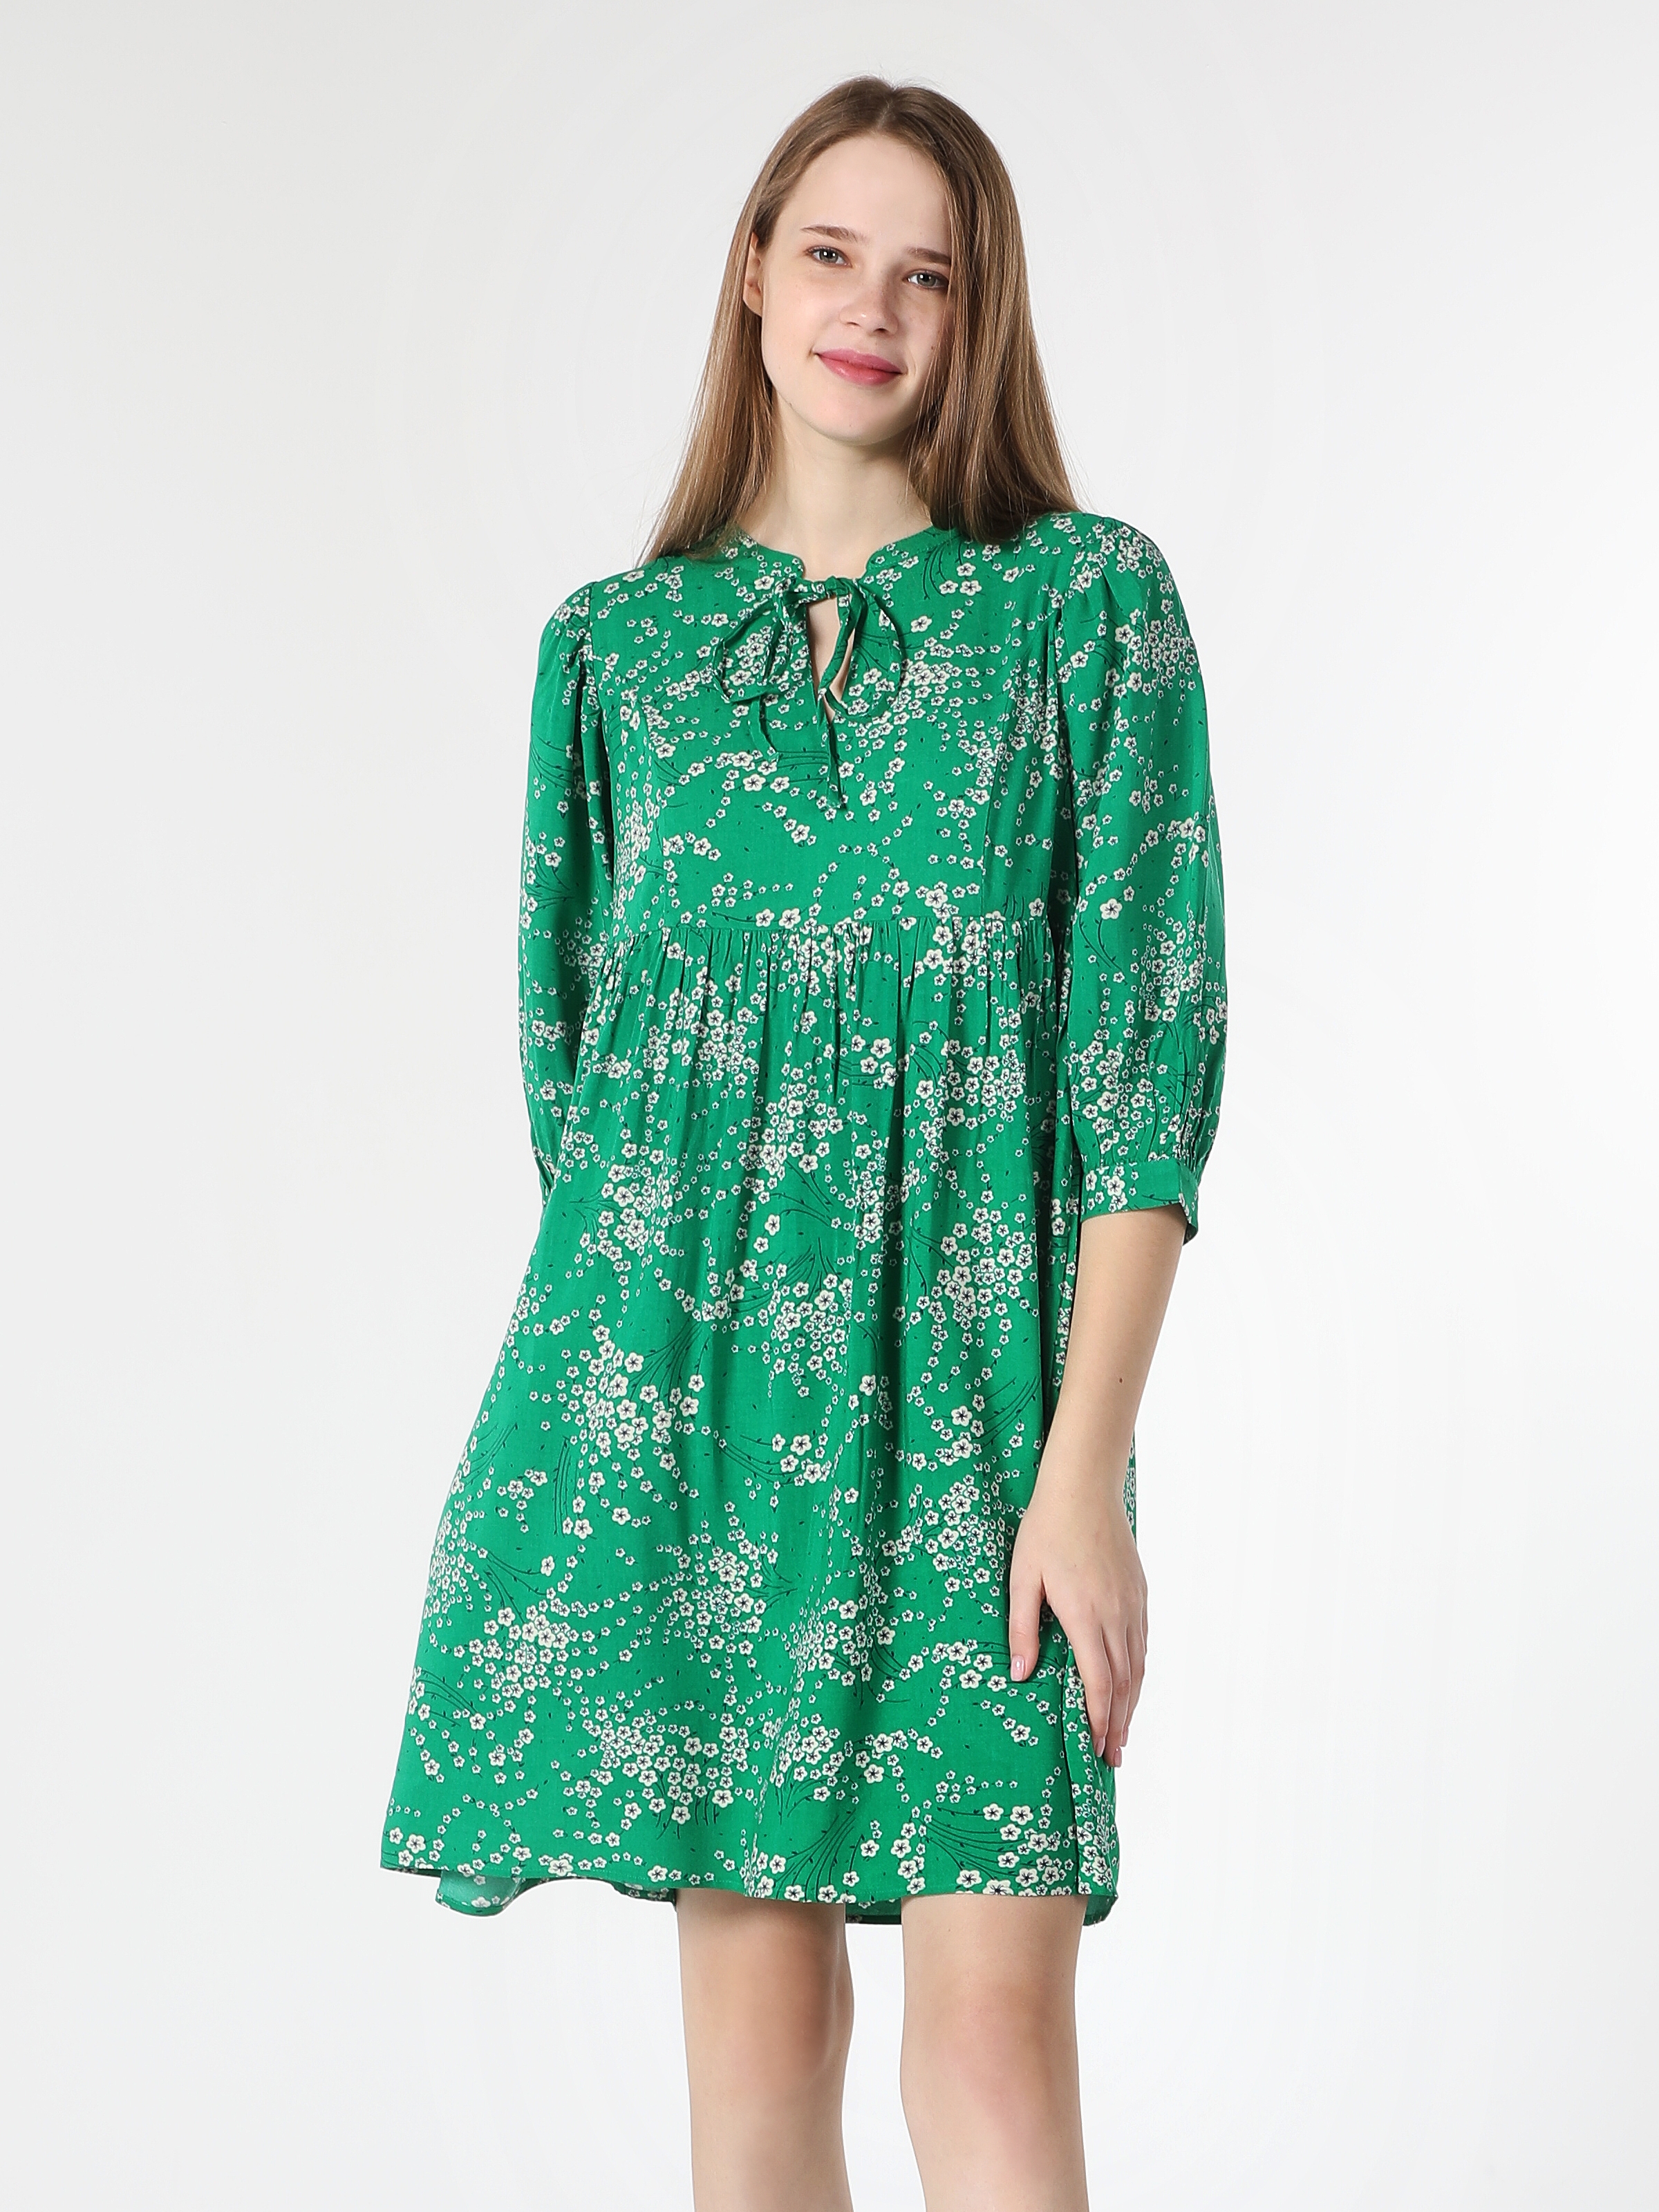 Afficher les détails de Robe Femme Verte À İmprimé Floral Coupe Régulière